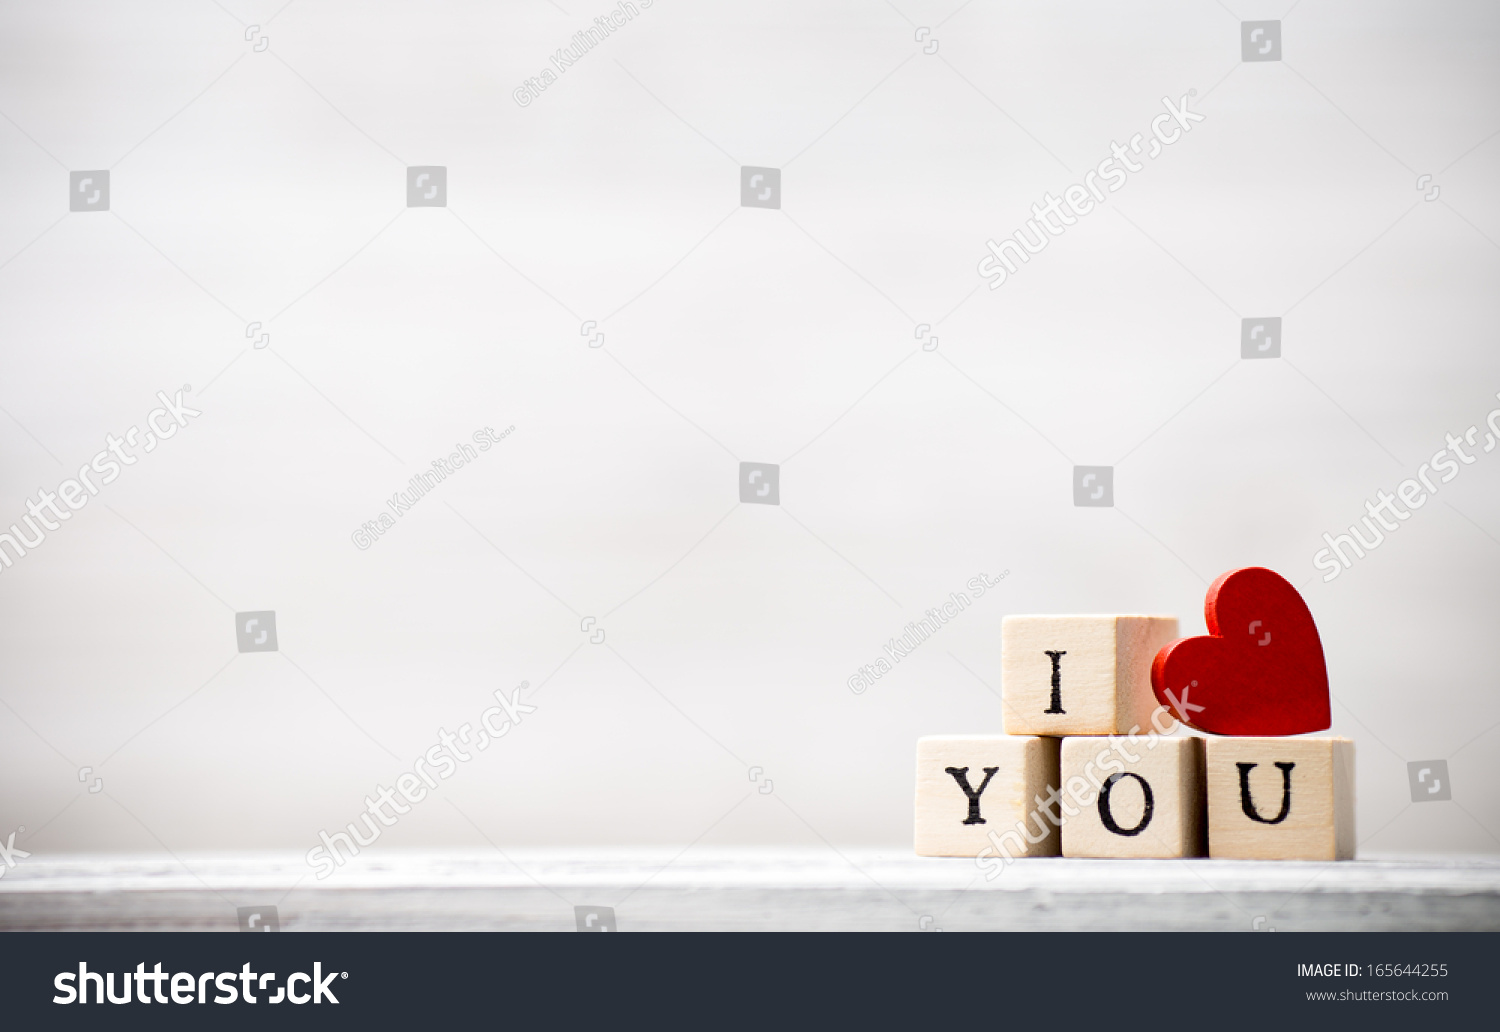 Love message written in wooden blocks. #165644255